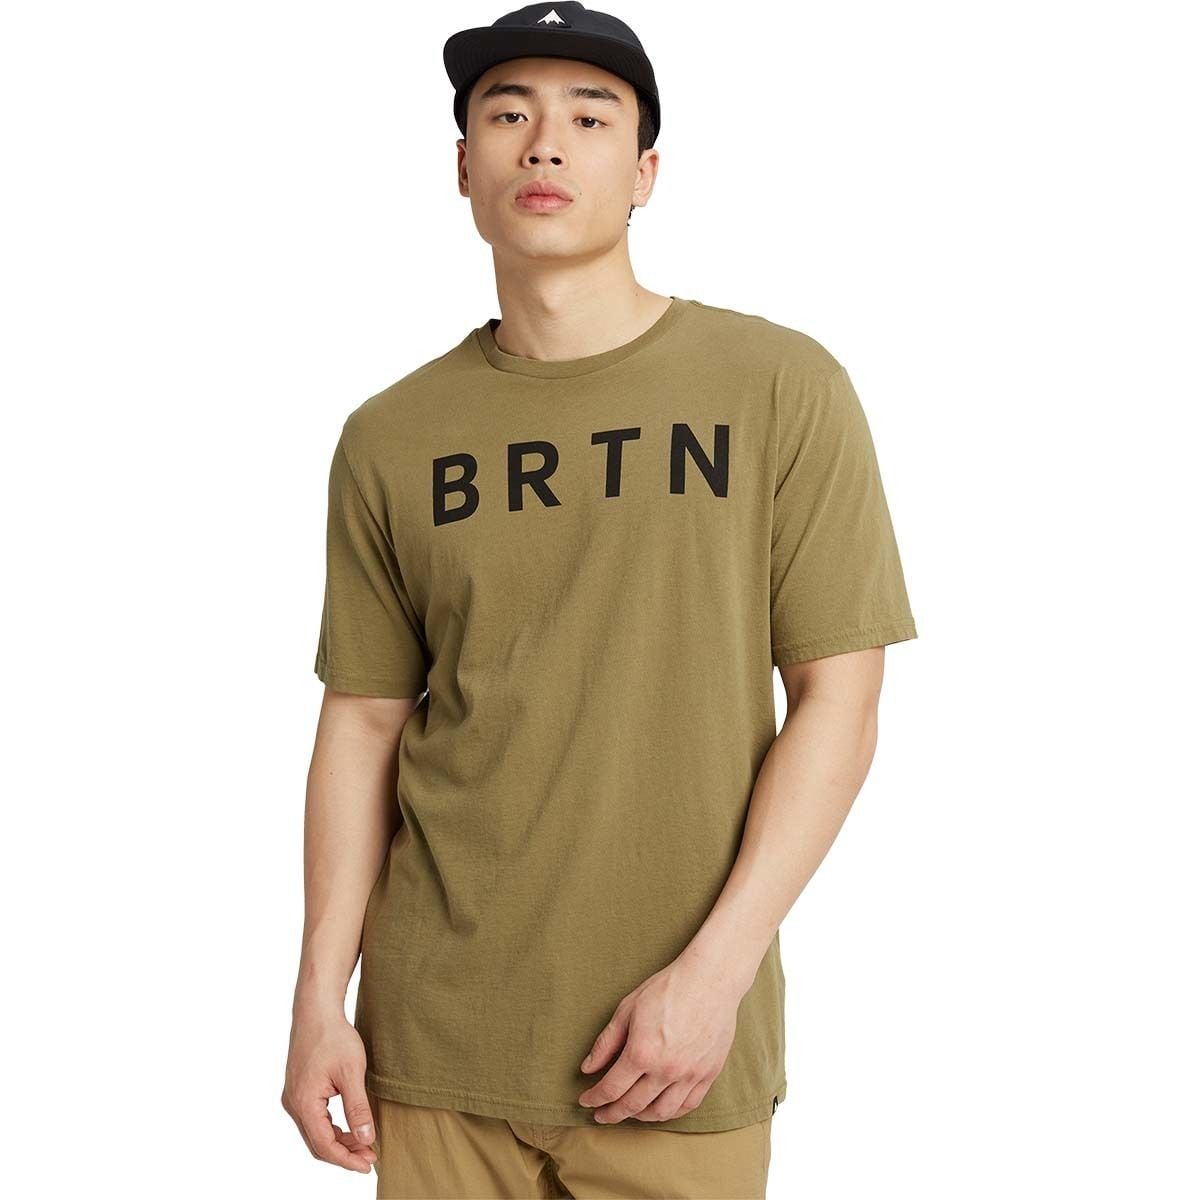 Burton BRTN T-Shirt - Men's